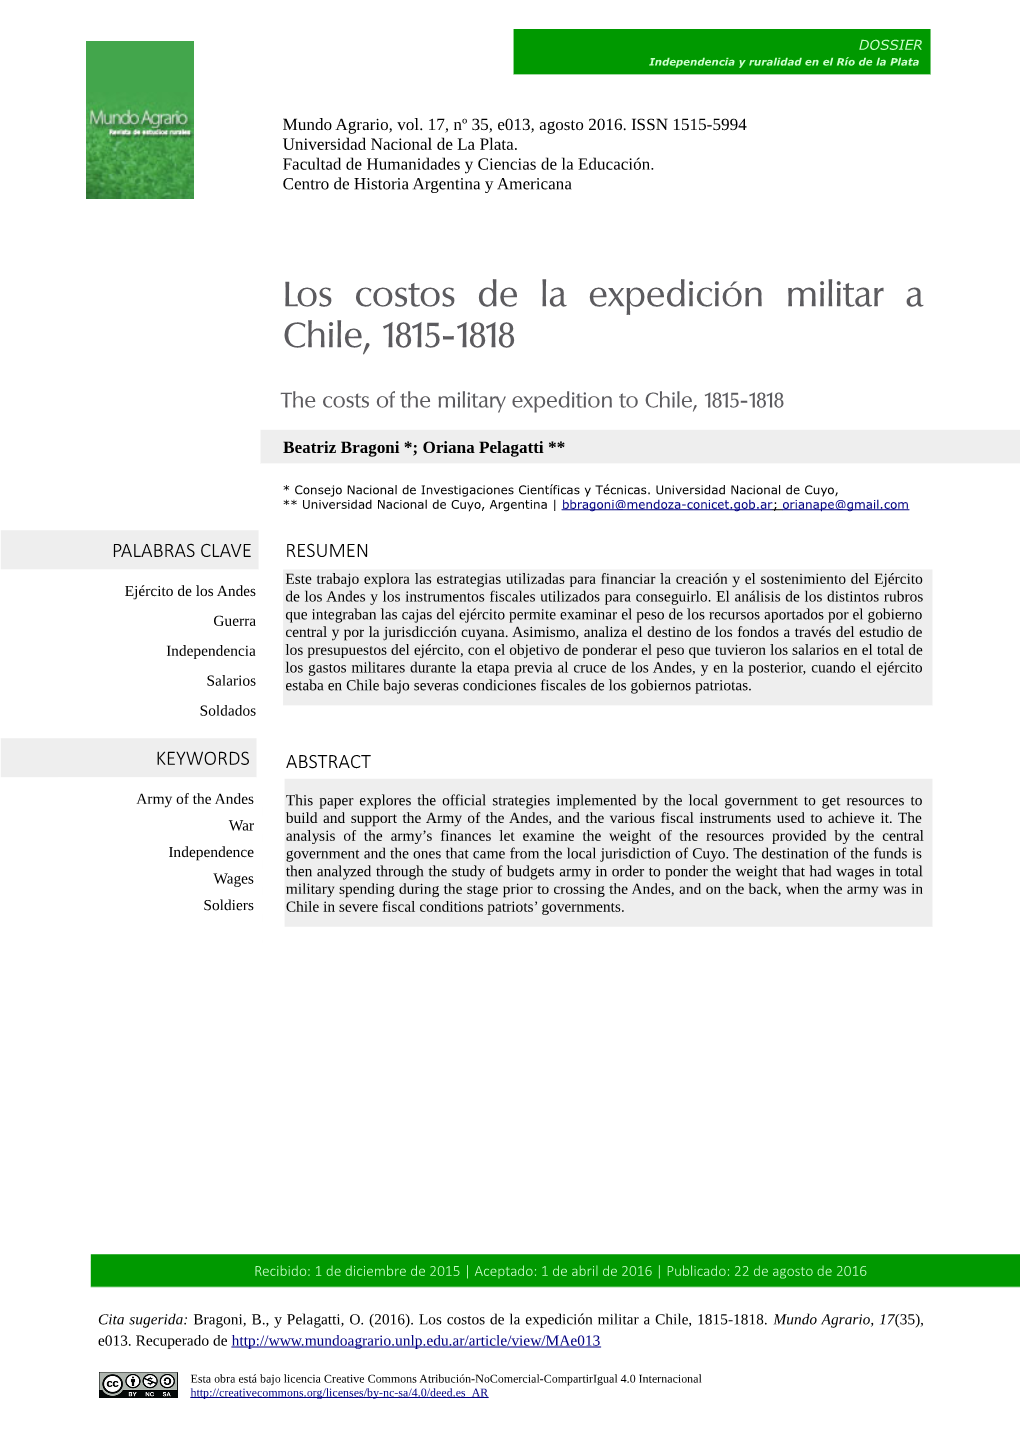 Los Costos De La Expedición Militar a Chile, 1815-1818